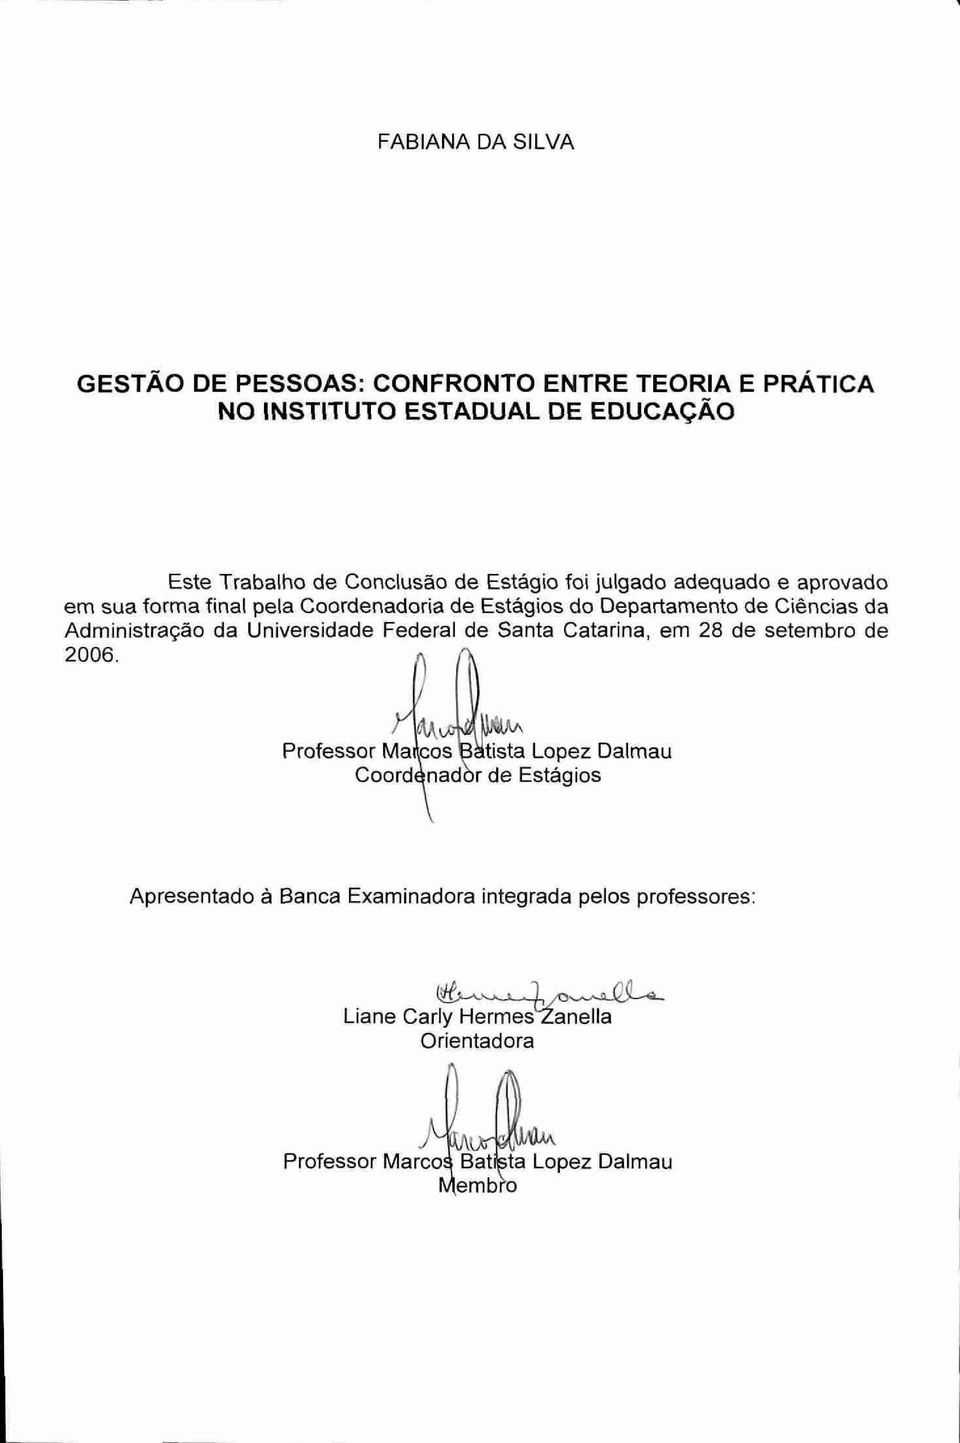 da Universidade Federal de Santa Catarina, em 28 de setembro de 2006.